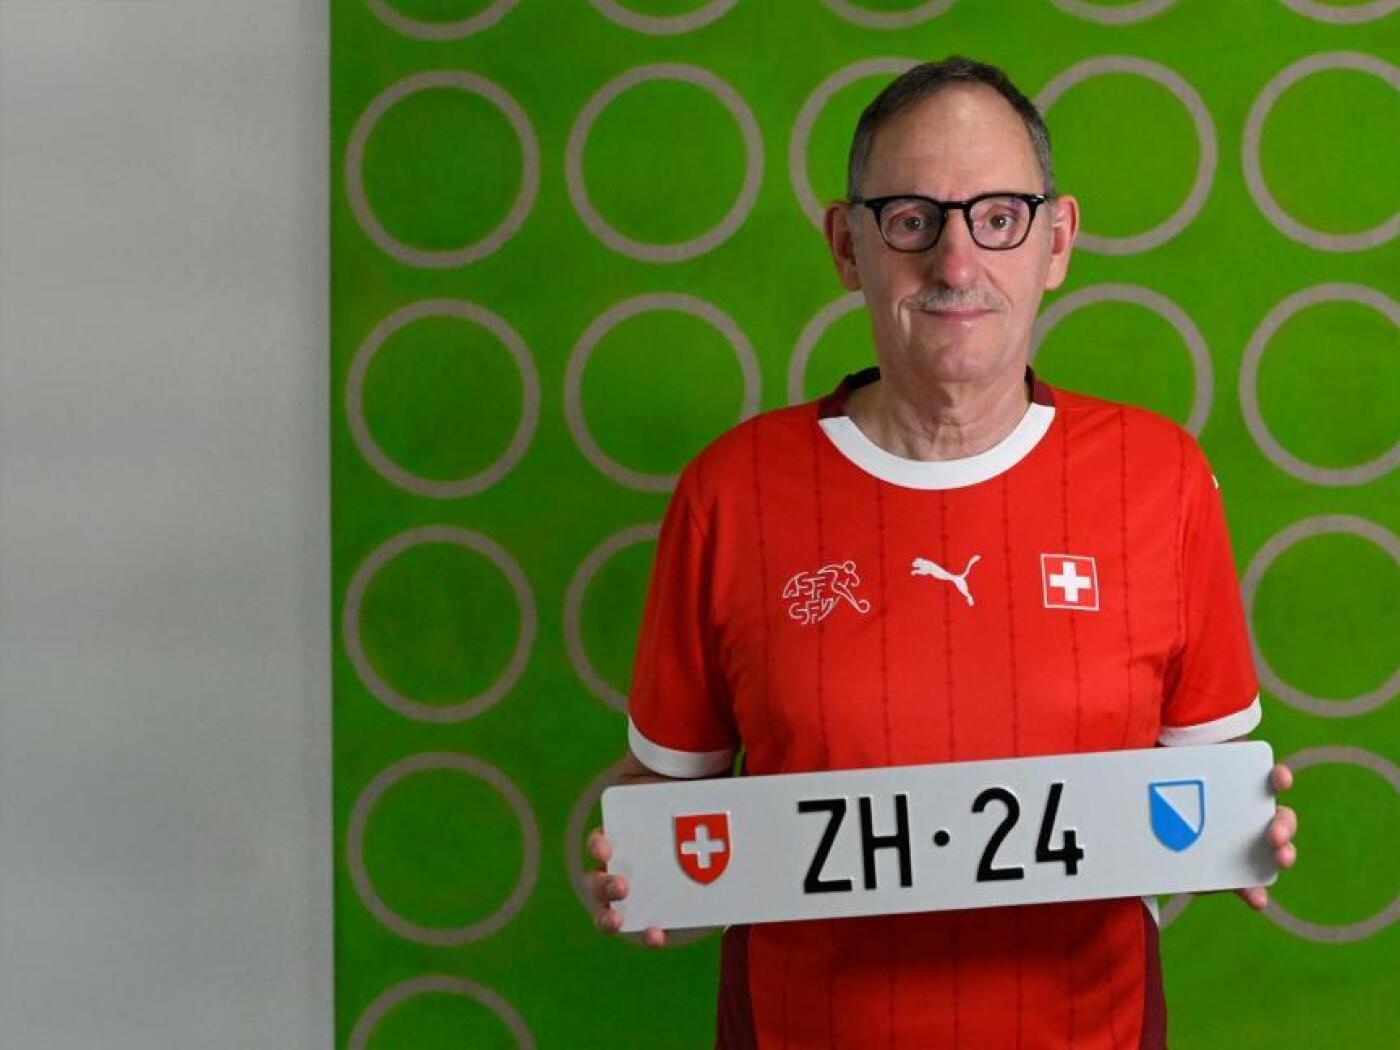 "Andy2" Bietet 299.000 Franken für "24" Nummernschild